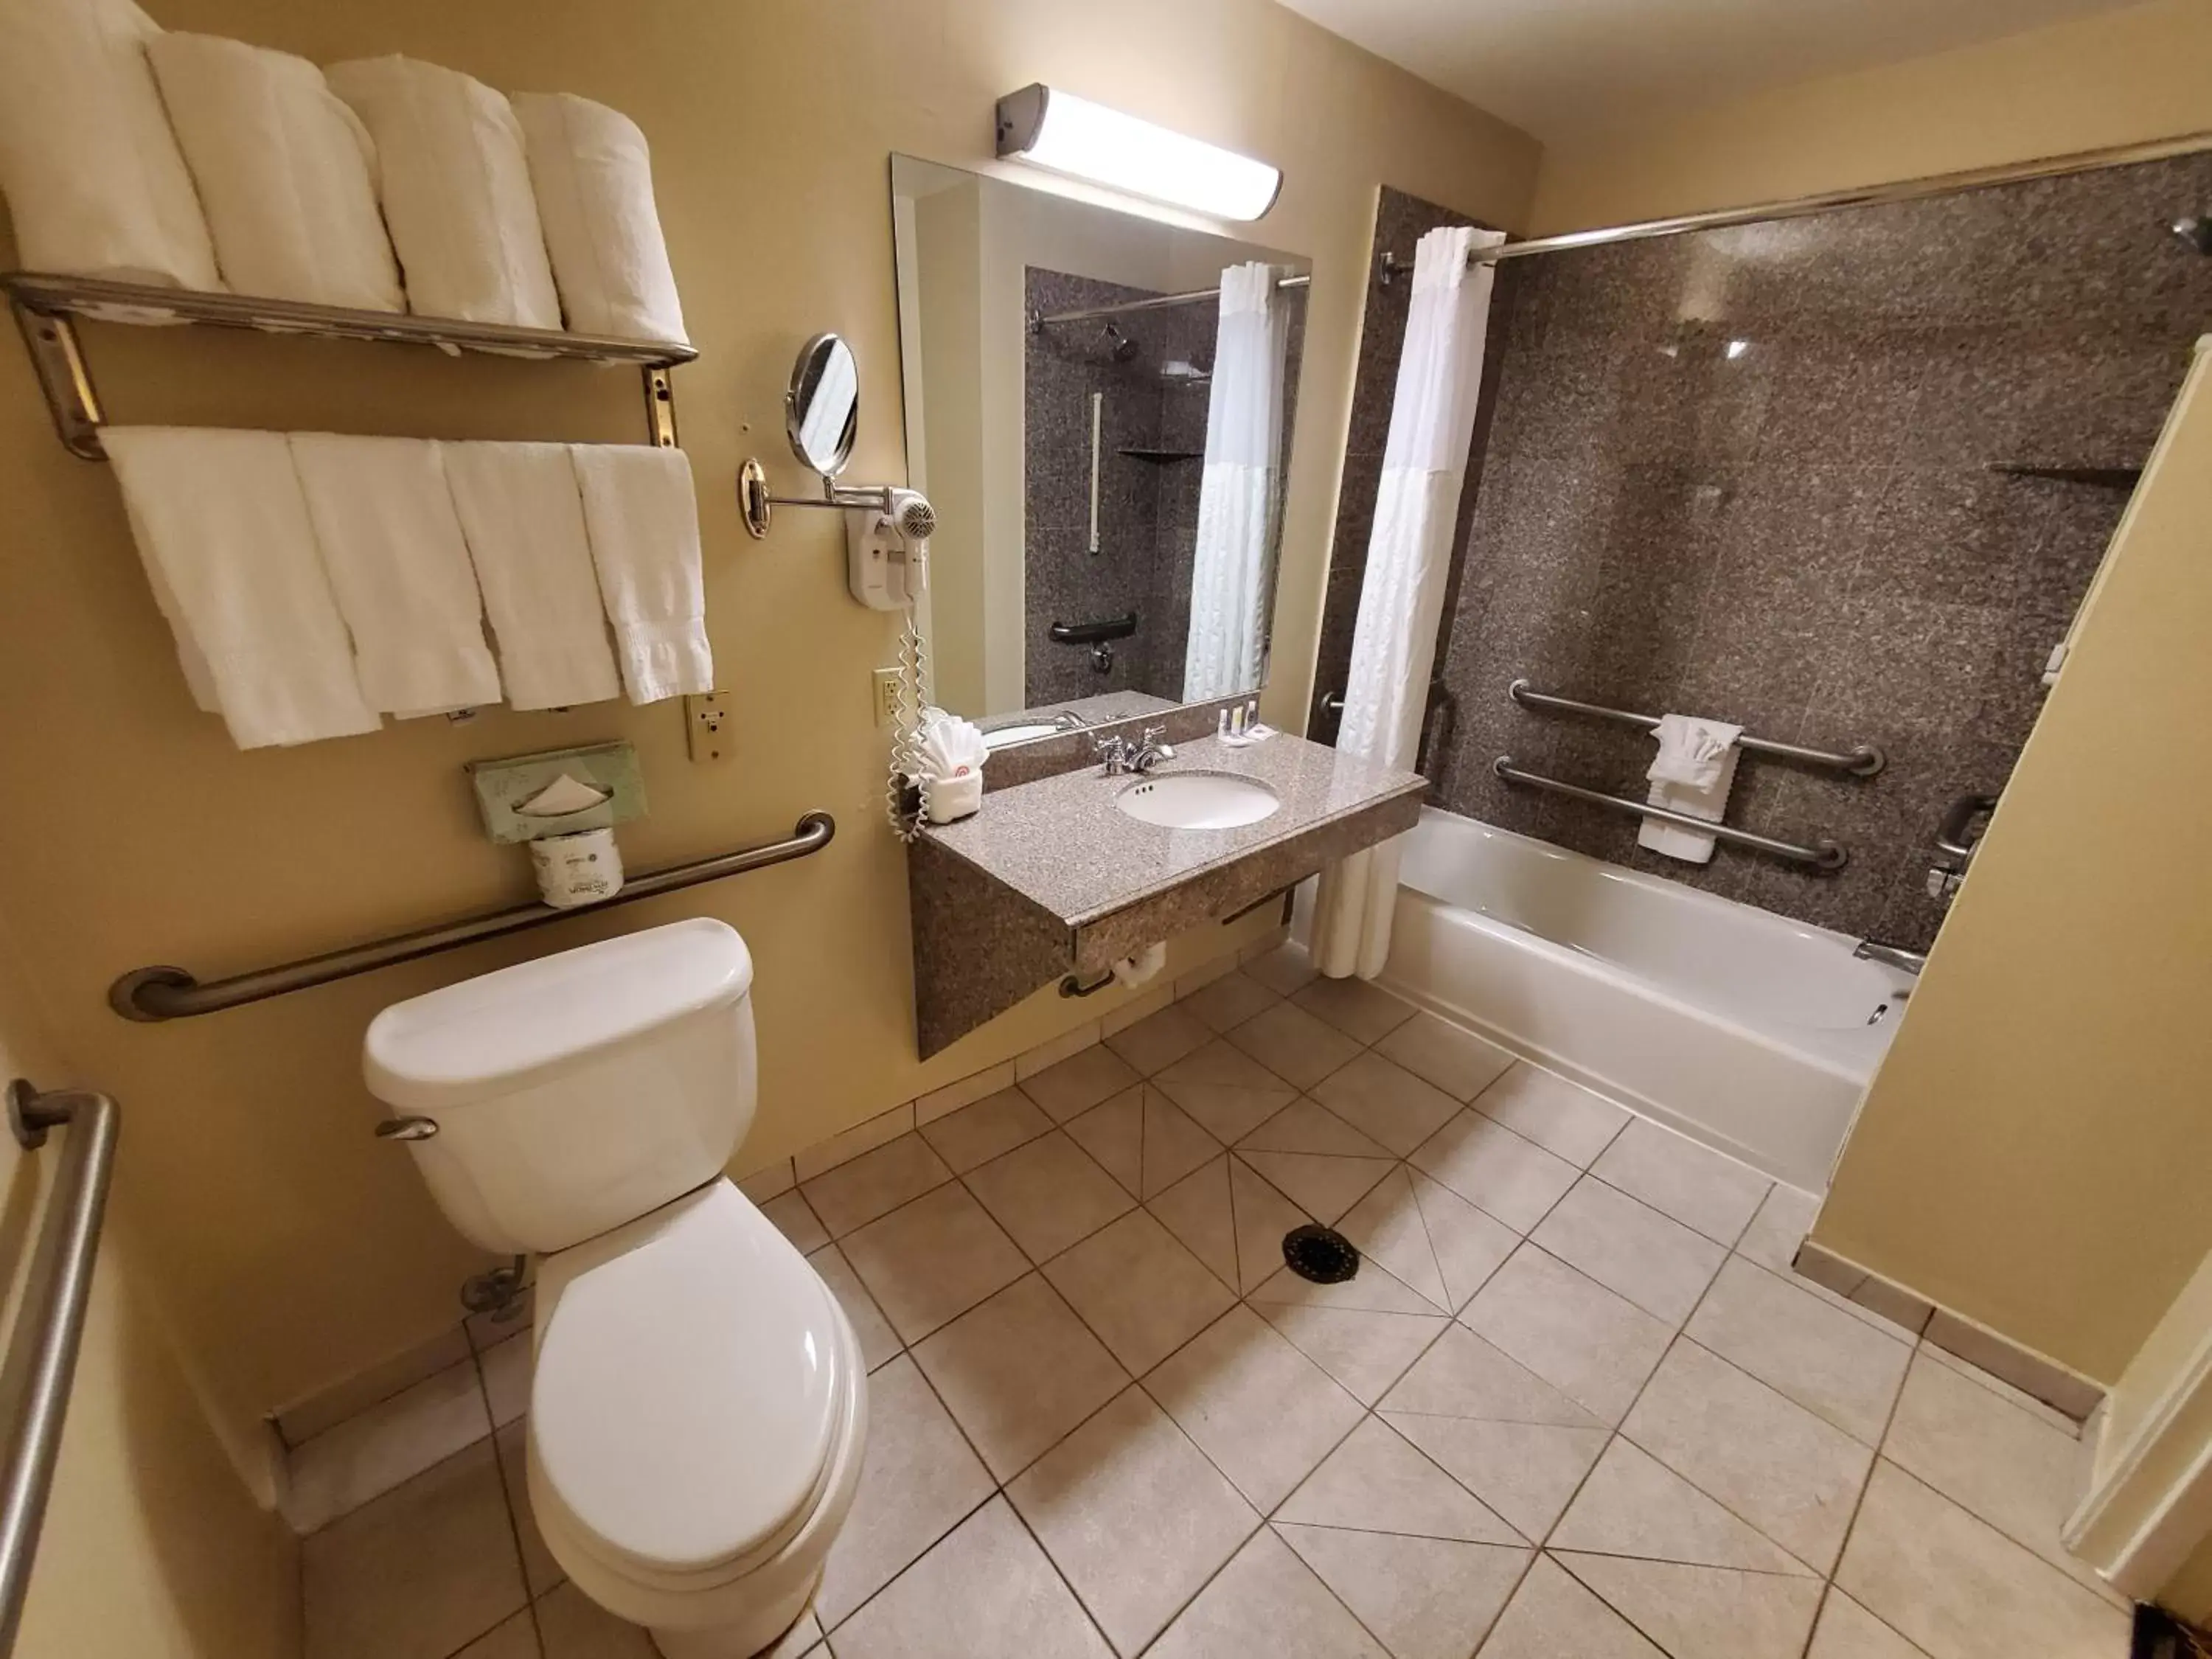 Bathroom in Comfort Suites near Texas Medical Center - NRG Stadium